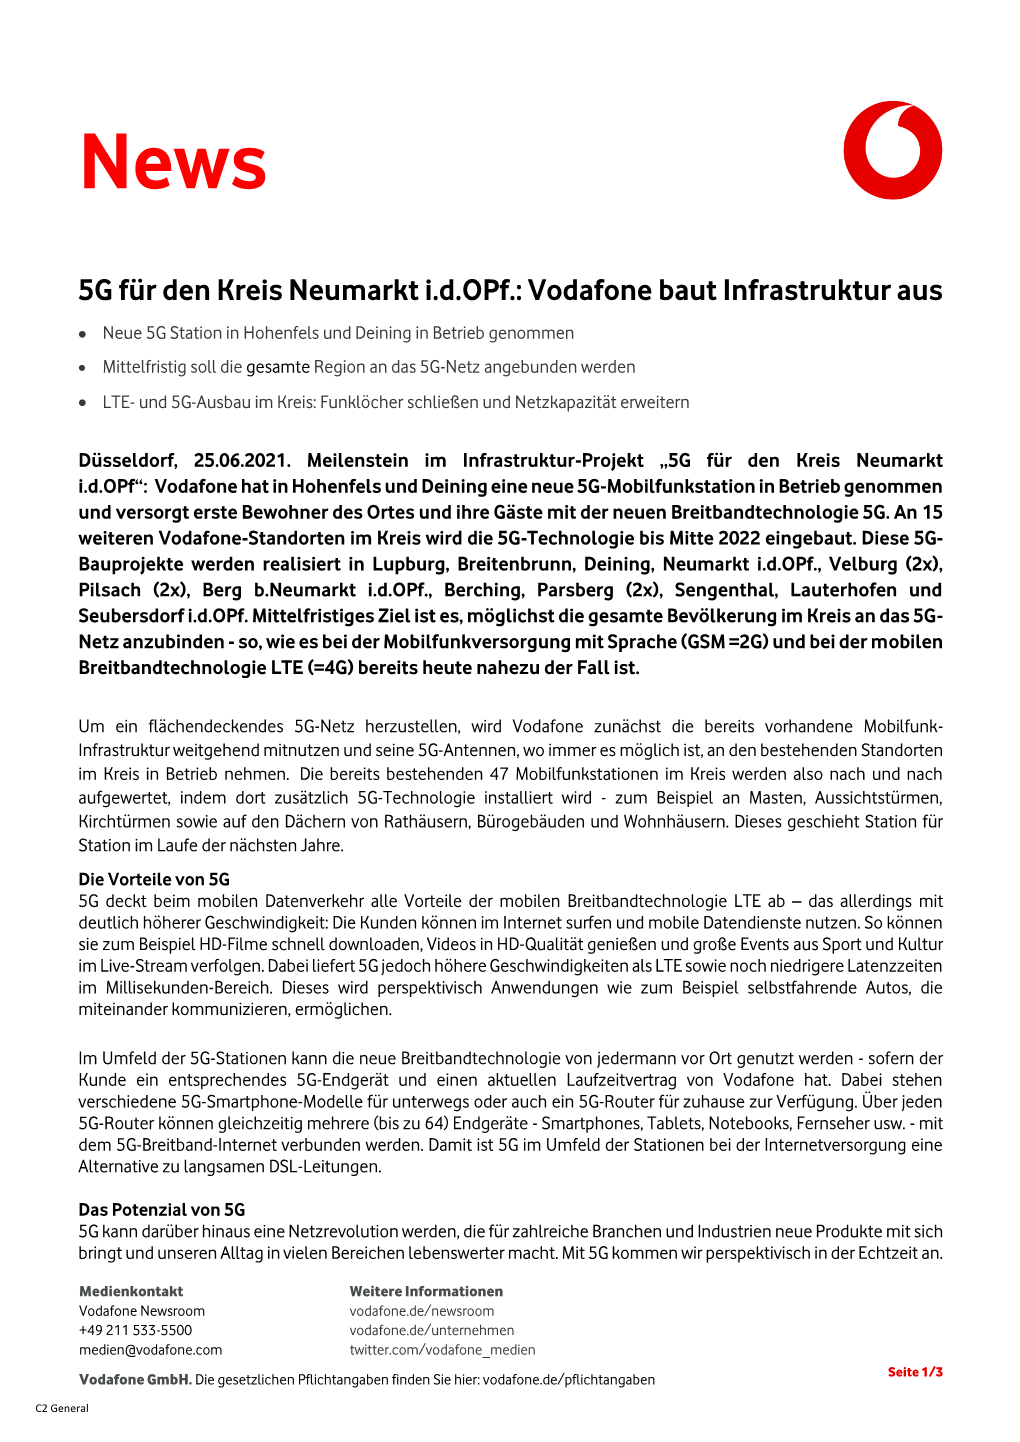 5G Für Den Kreis Neumarkt I.D.Opf.: Vodafone Baut Infrastruktur